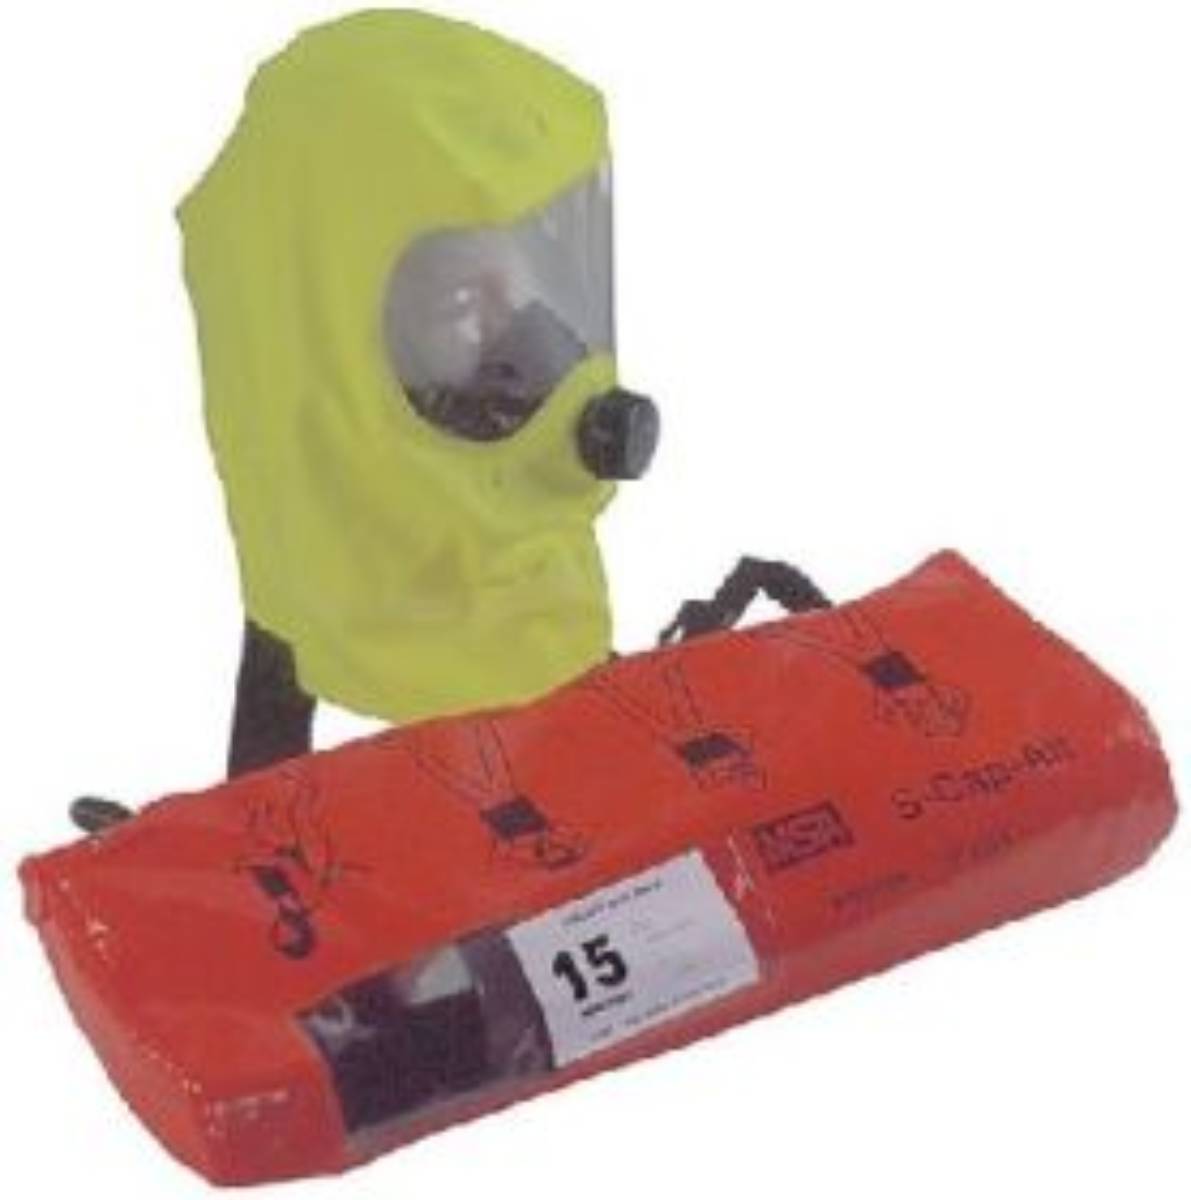 Cagoule filtrante S-CAP - Appareils d'évacuation